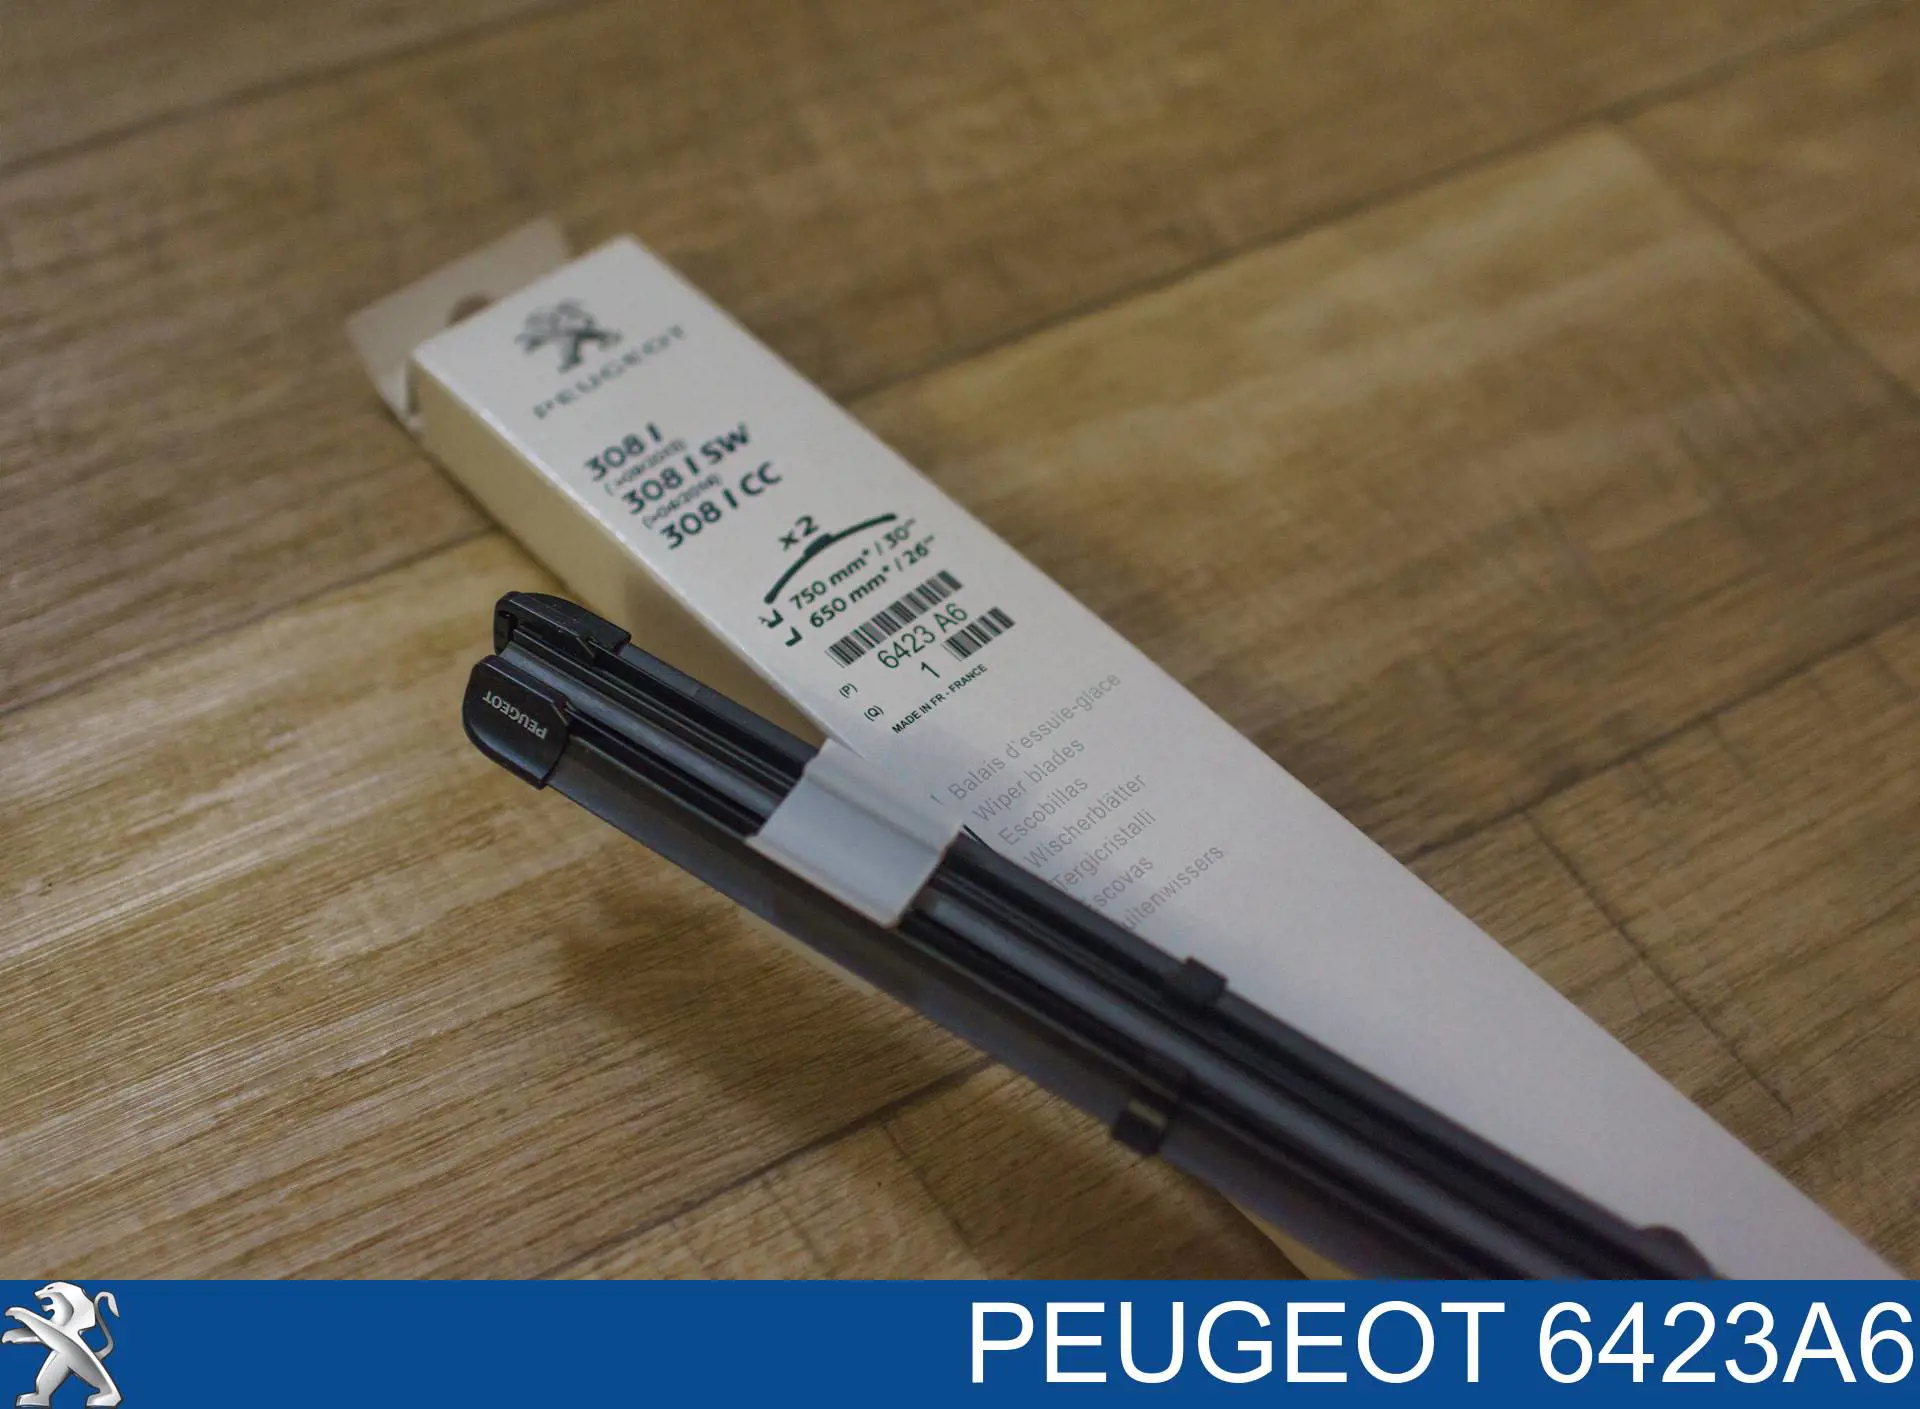 6423A6 Peugeot/Citroen щетка-дворник лобового стекла, комплект из 2 шт.